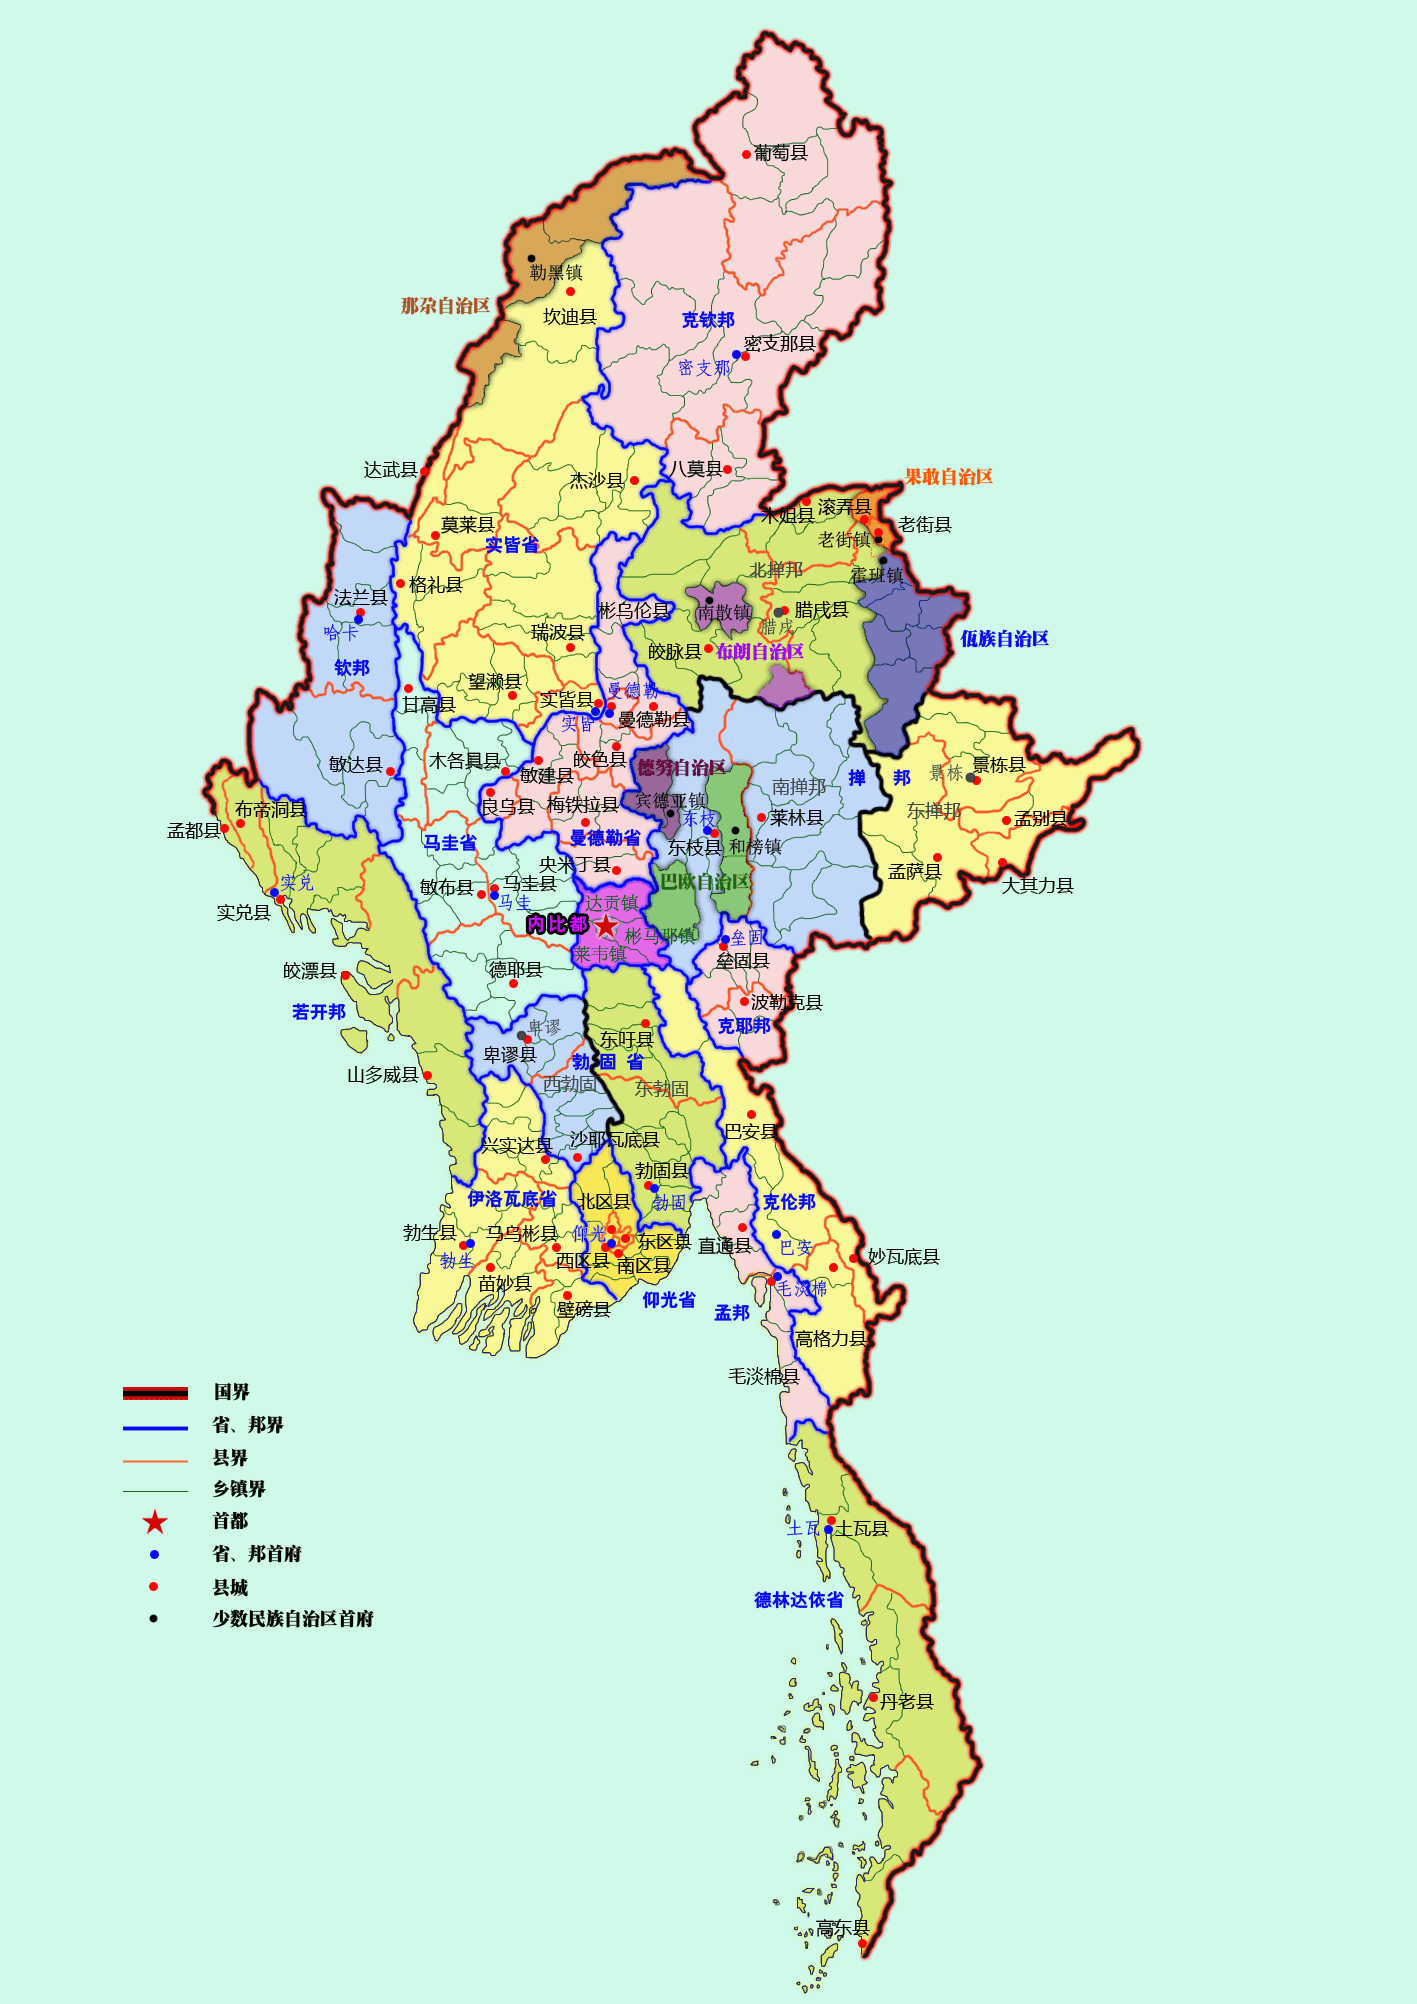 从缅甸的民族问题,缅甸地理位置来看,我国应该做哪些工作?